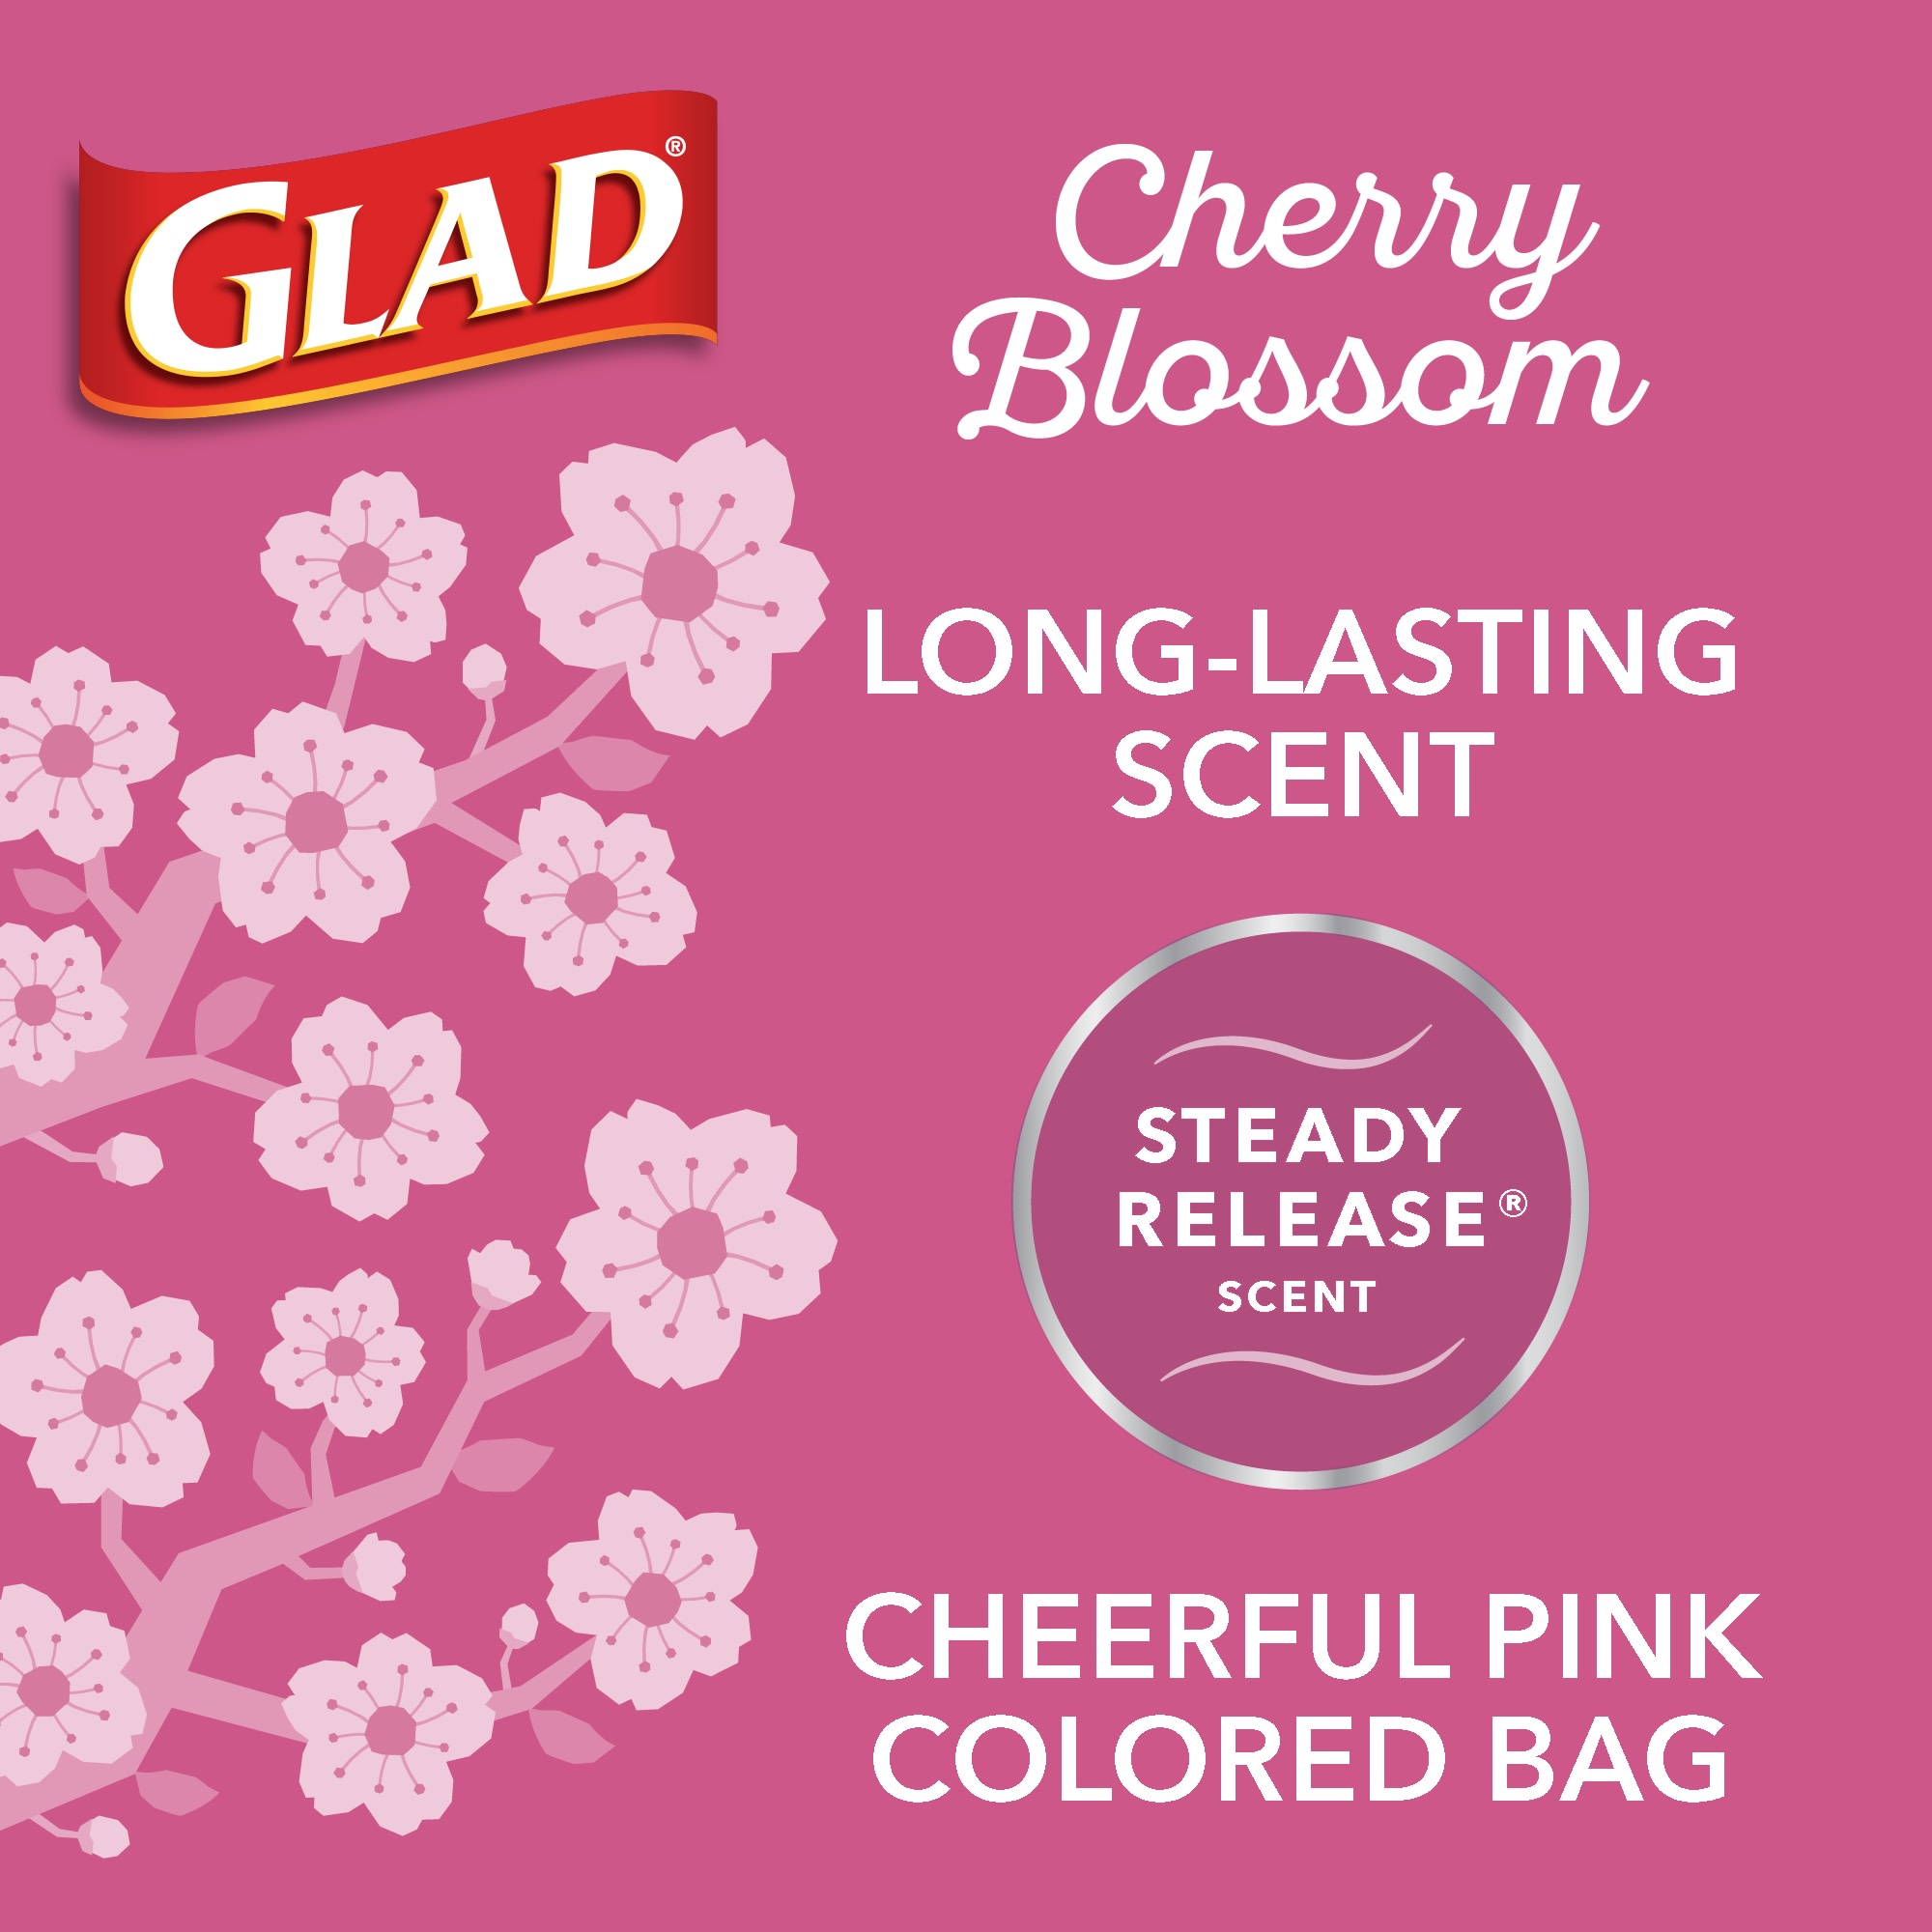 Glad fashion ad promotes pink cherry blossom trash bag